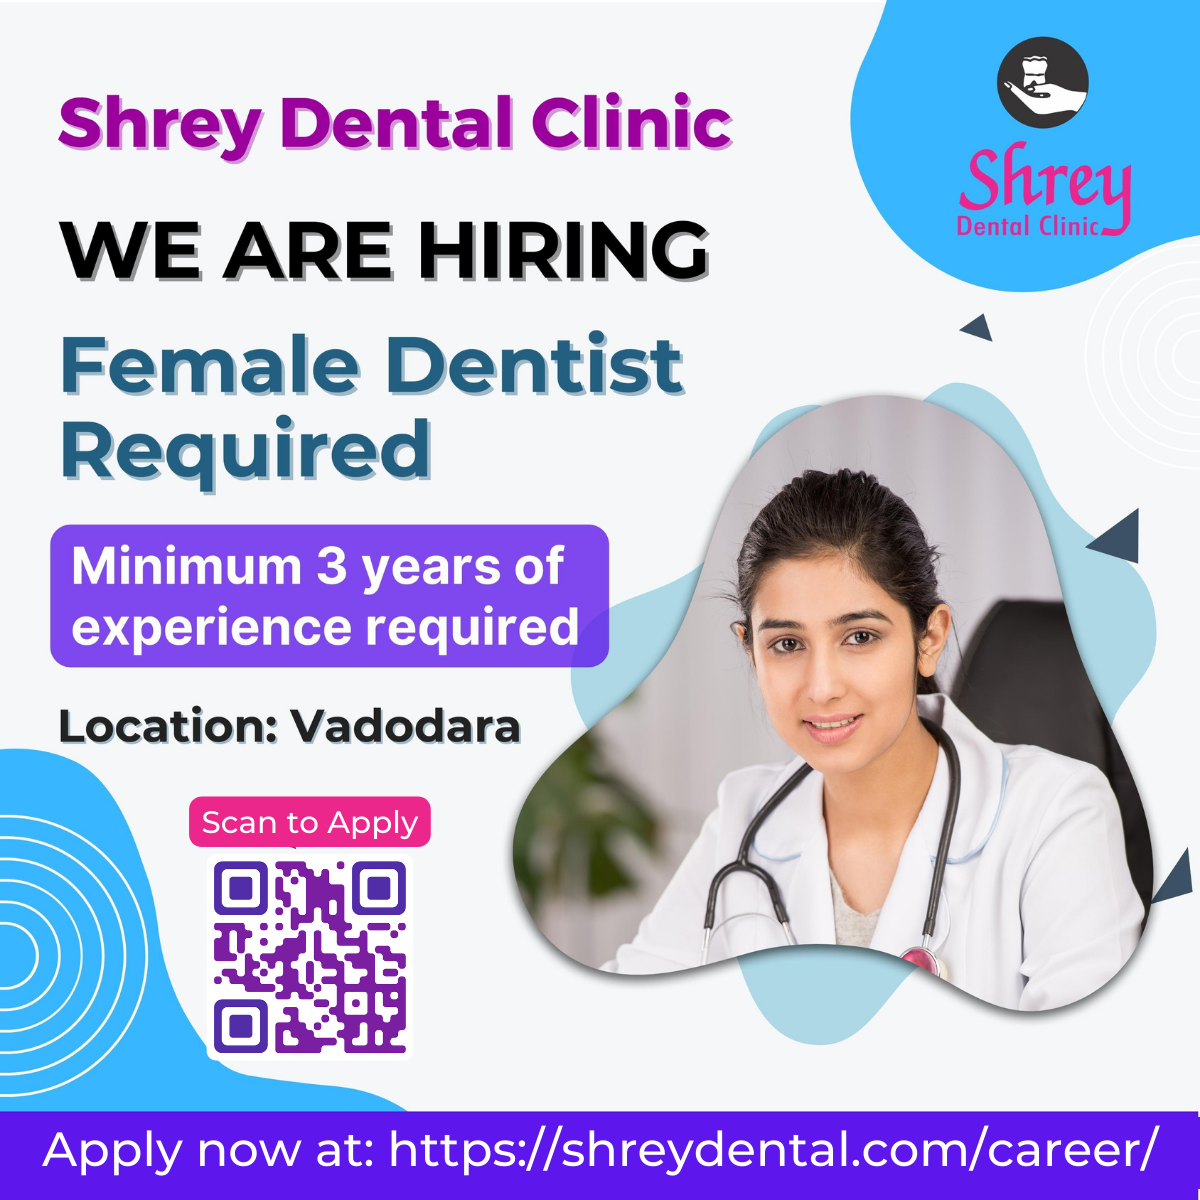 Shrey Dental Clinic Paid Ads